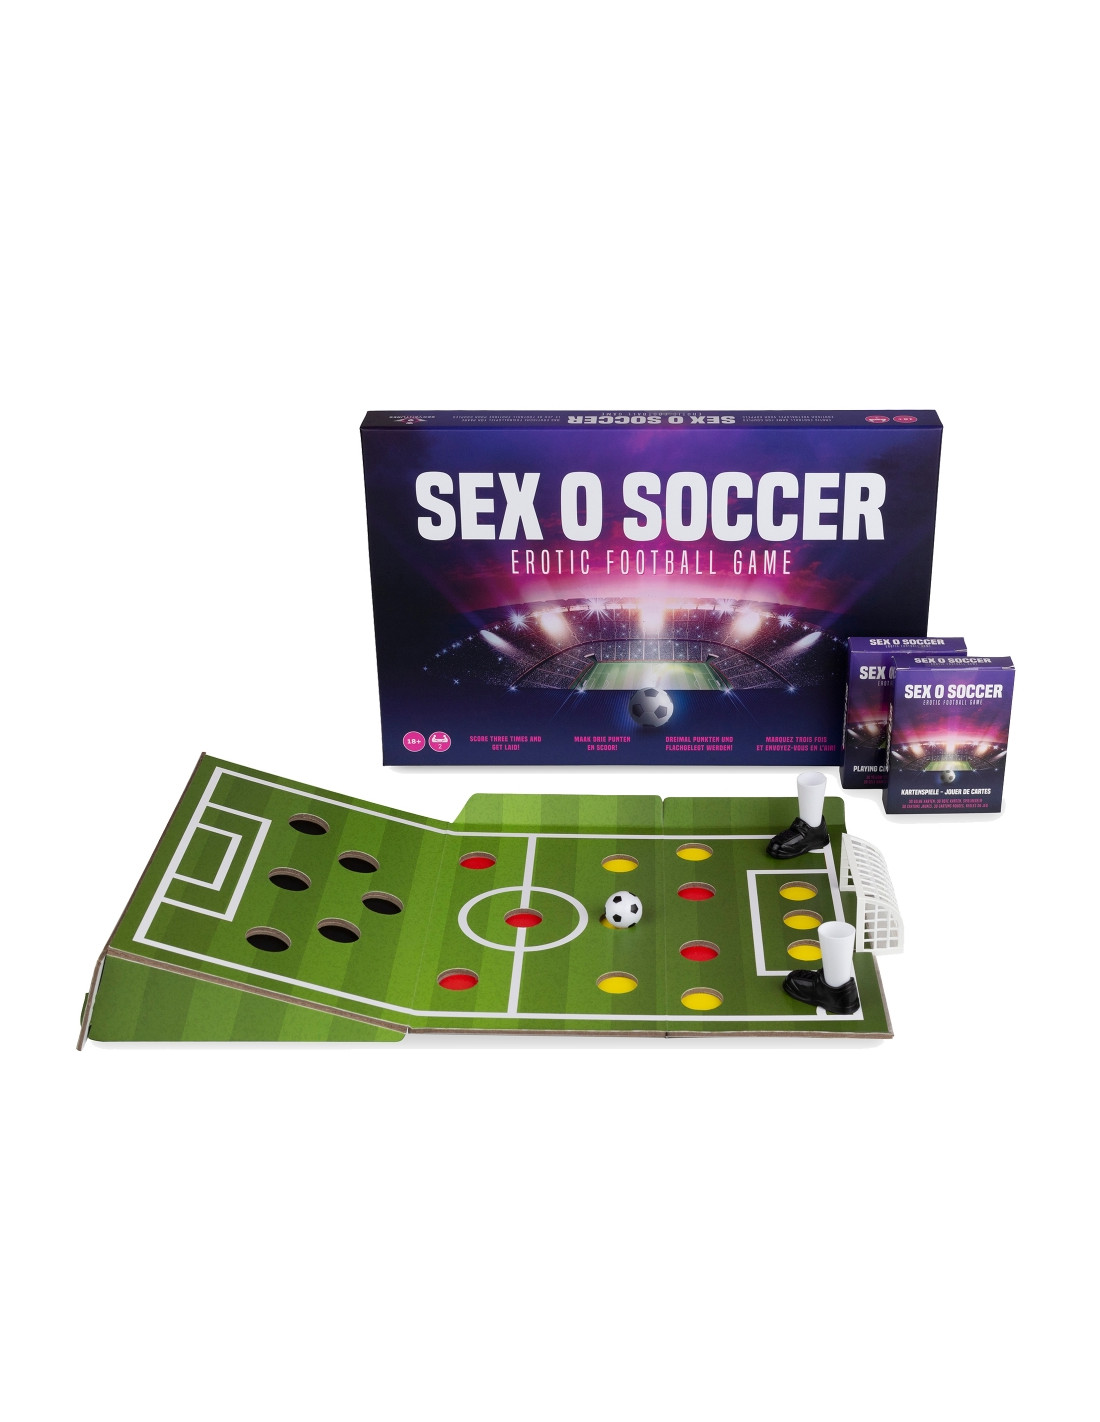 Sex-O-Soccer jeu de foot sexy kXzOTzWU